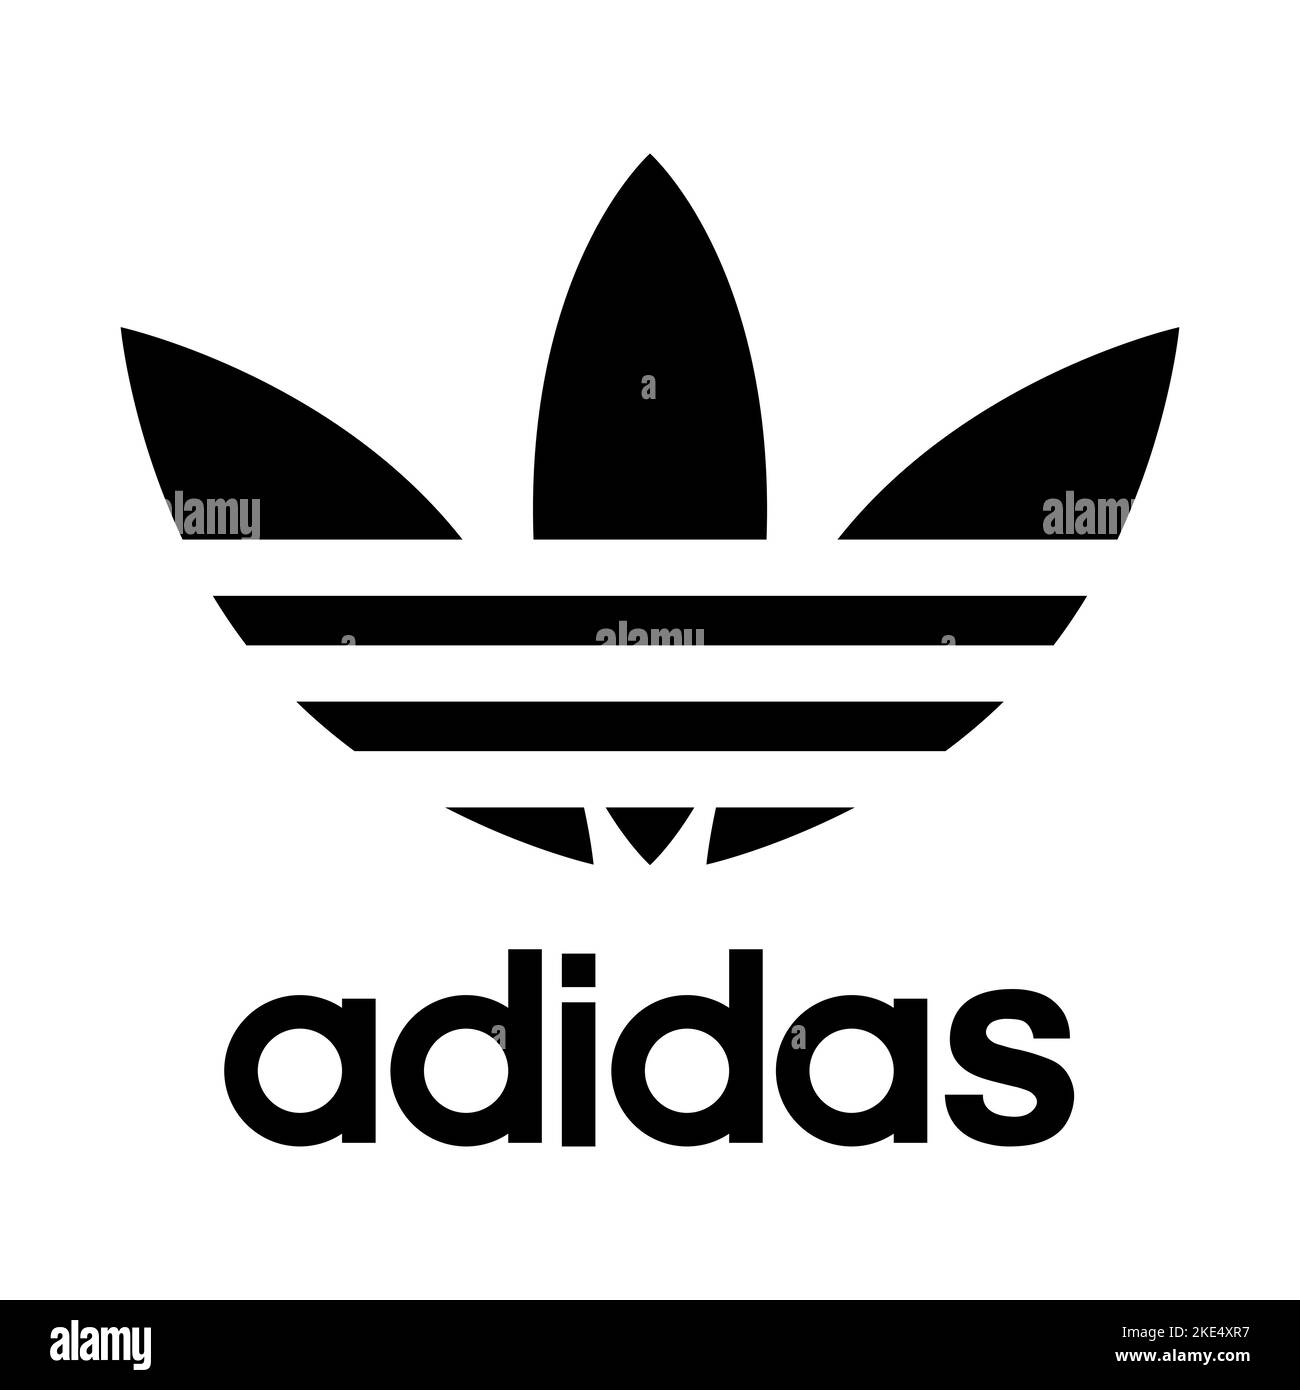 Logo adidas Banque d'images noir et blanc - Alamy